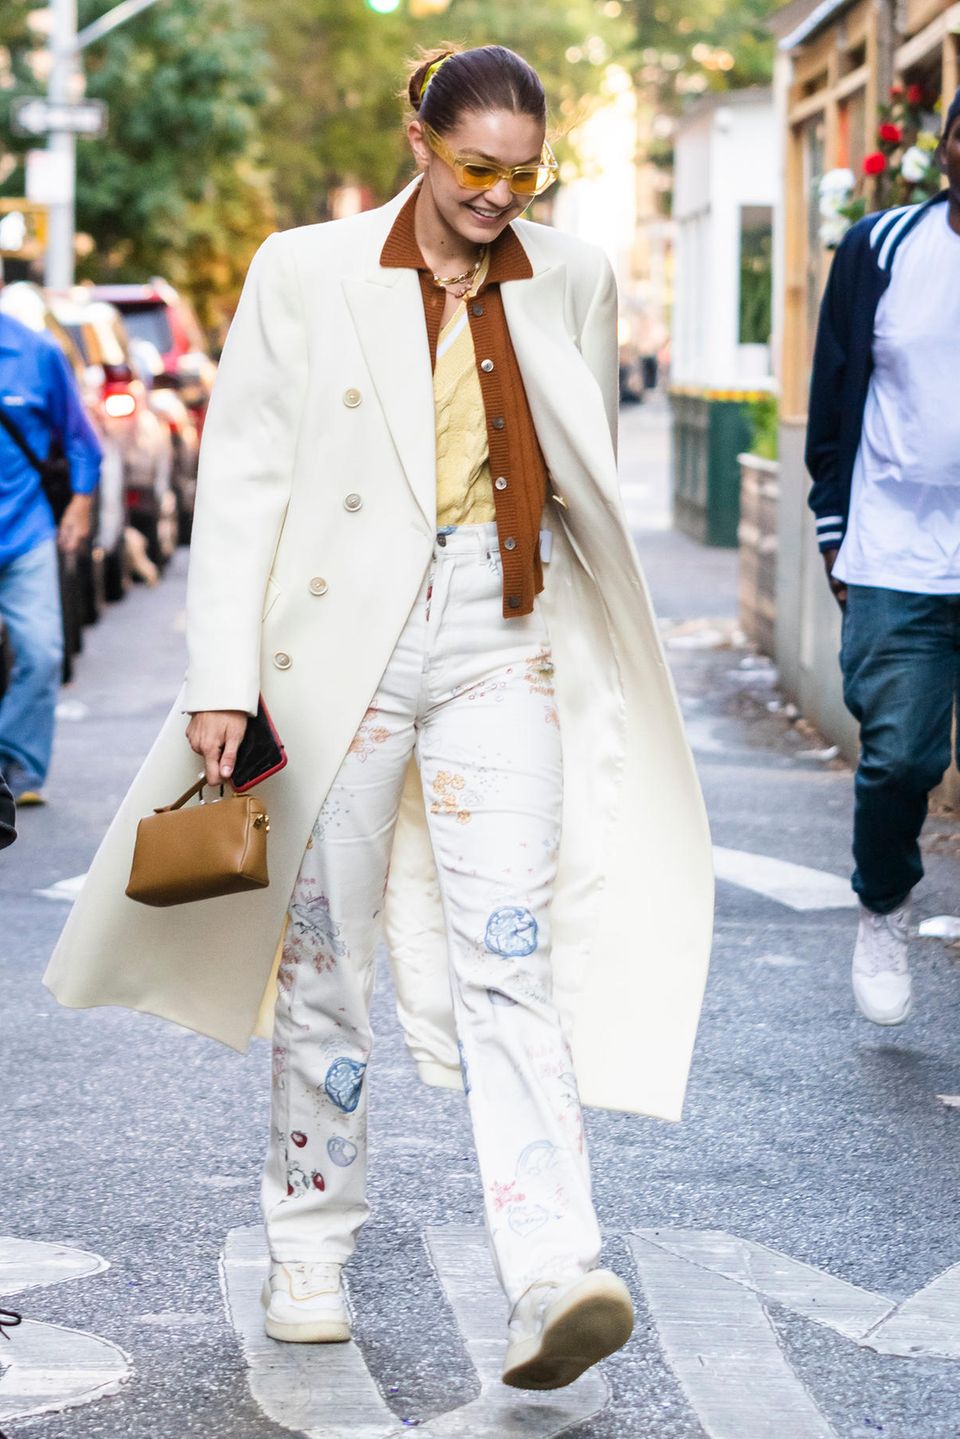 Gigi Hadid, auffällig wie immer! In einem creme-weißen Mantel huscht die Modelmama durch New York City. Sie kombiniert den zweireihigen Mantel mit gedeckten Farben, wobei Gigis Sonnenbrille den aus den 70ern inspirierten Look vervollständigt.